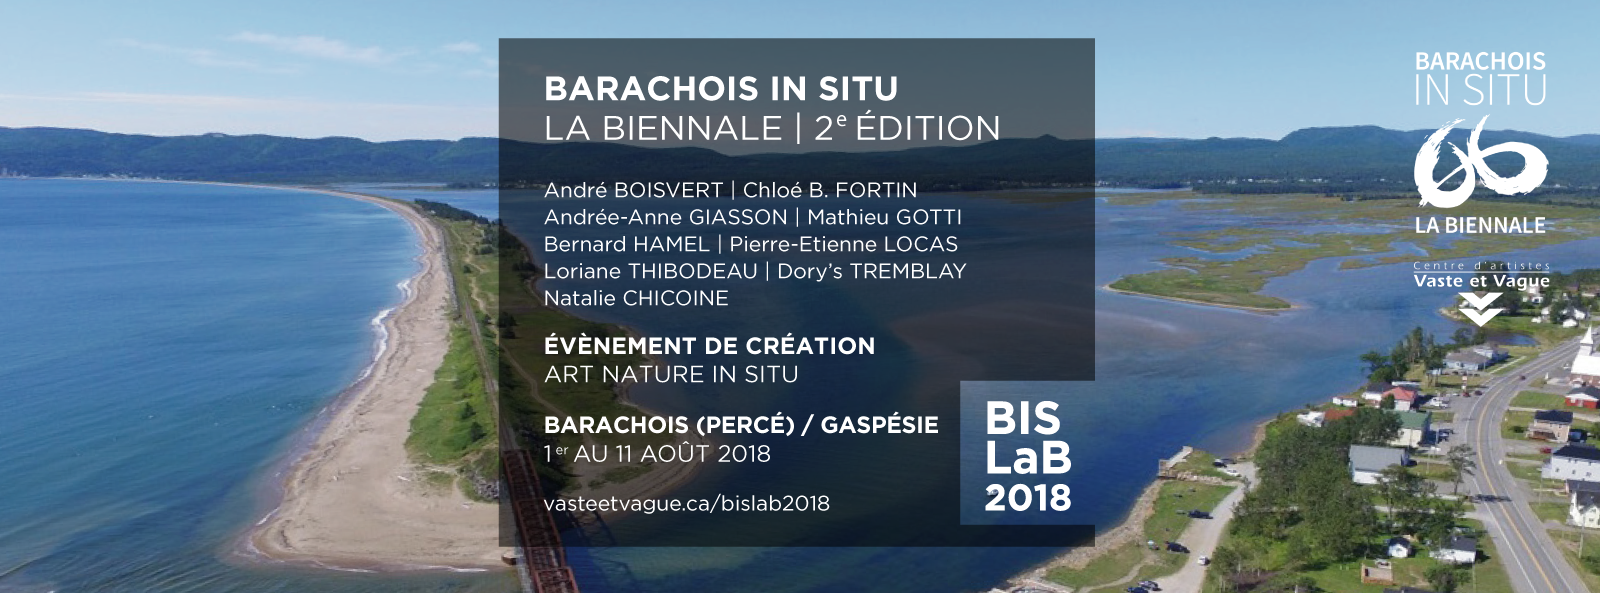 BARACHOIS IN SITU | LA BIENNALE | BISLaB 2018 | Évènement de création | ART NATURE IN SITU | Barachois (Percé) Gaspésie